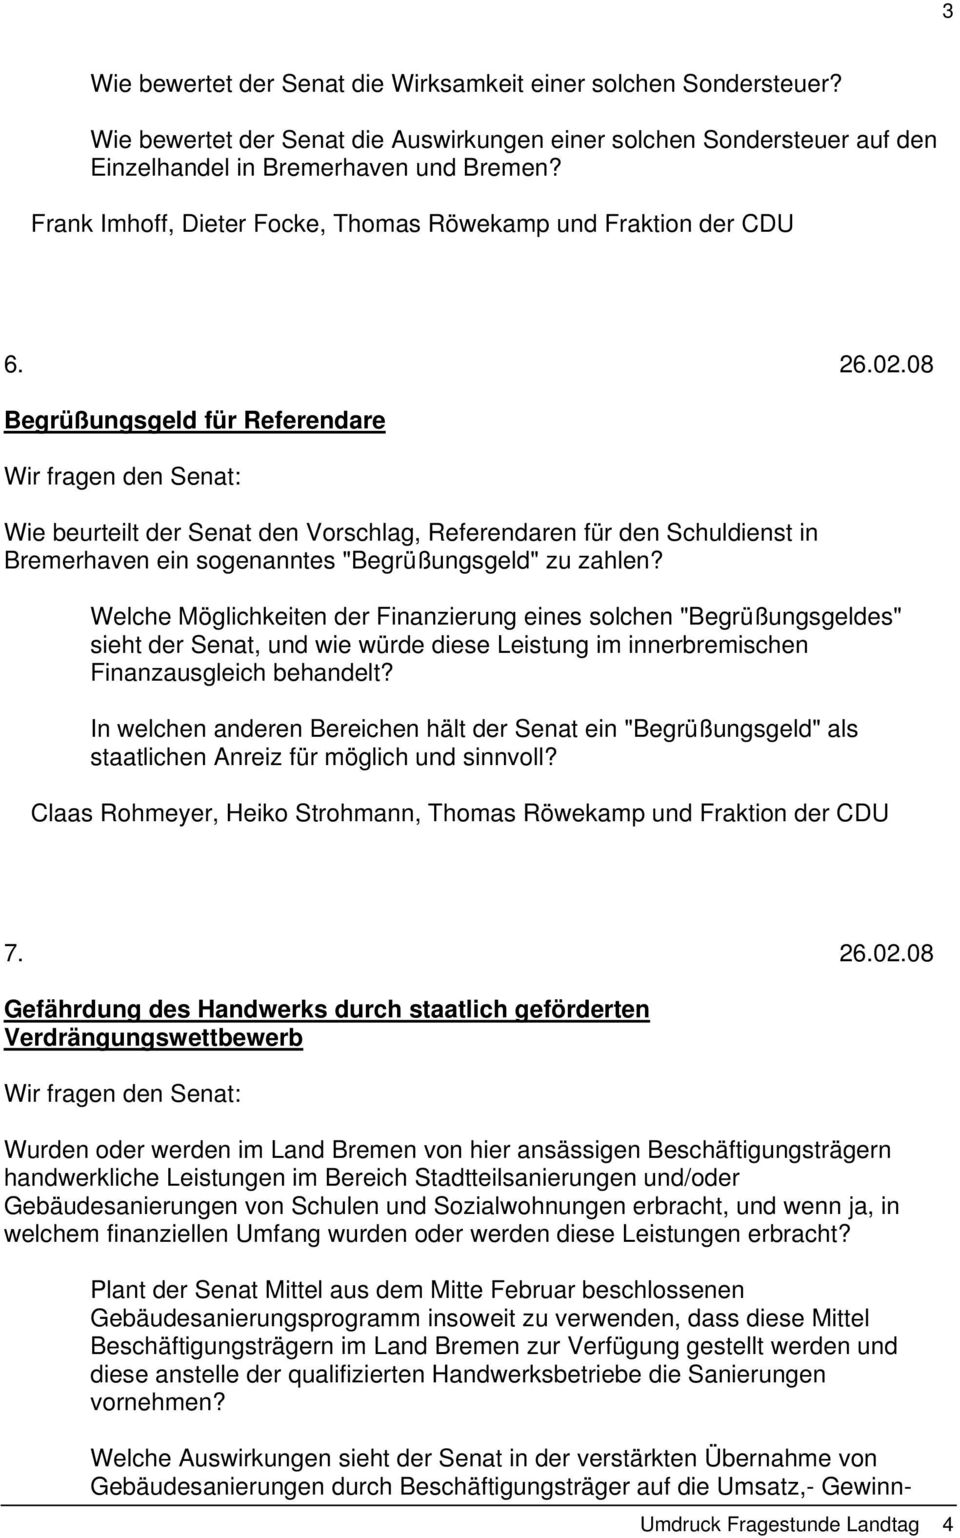 08 Begrüßungsgeld für Referendare Wie beurteilt der Senat den Vorschlag, Referendaren für den Schuldienst in Bremerhaven ein sogenanntes "Begrüßungsgeld" zu zahlen?